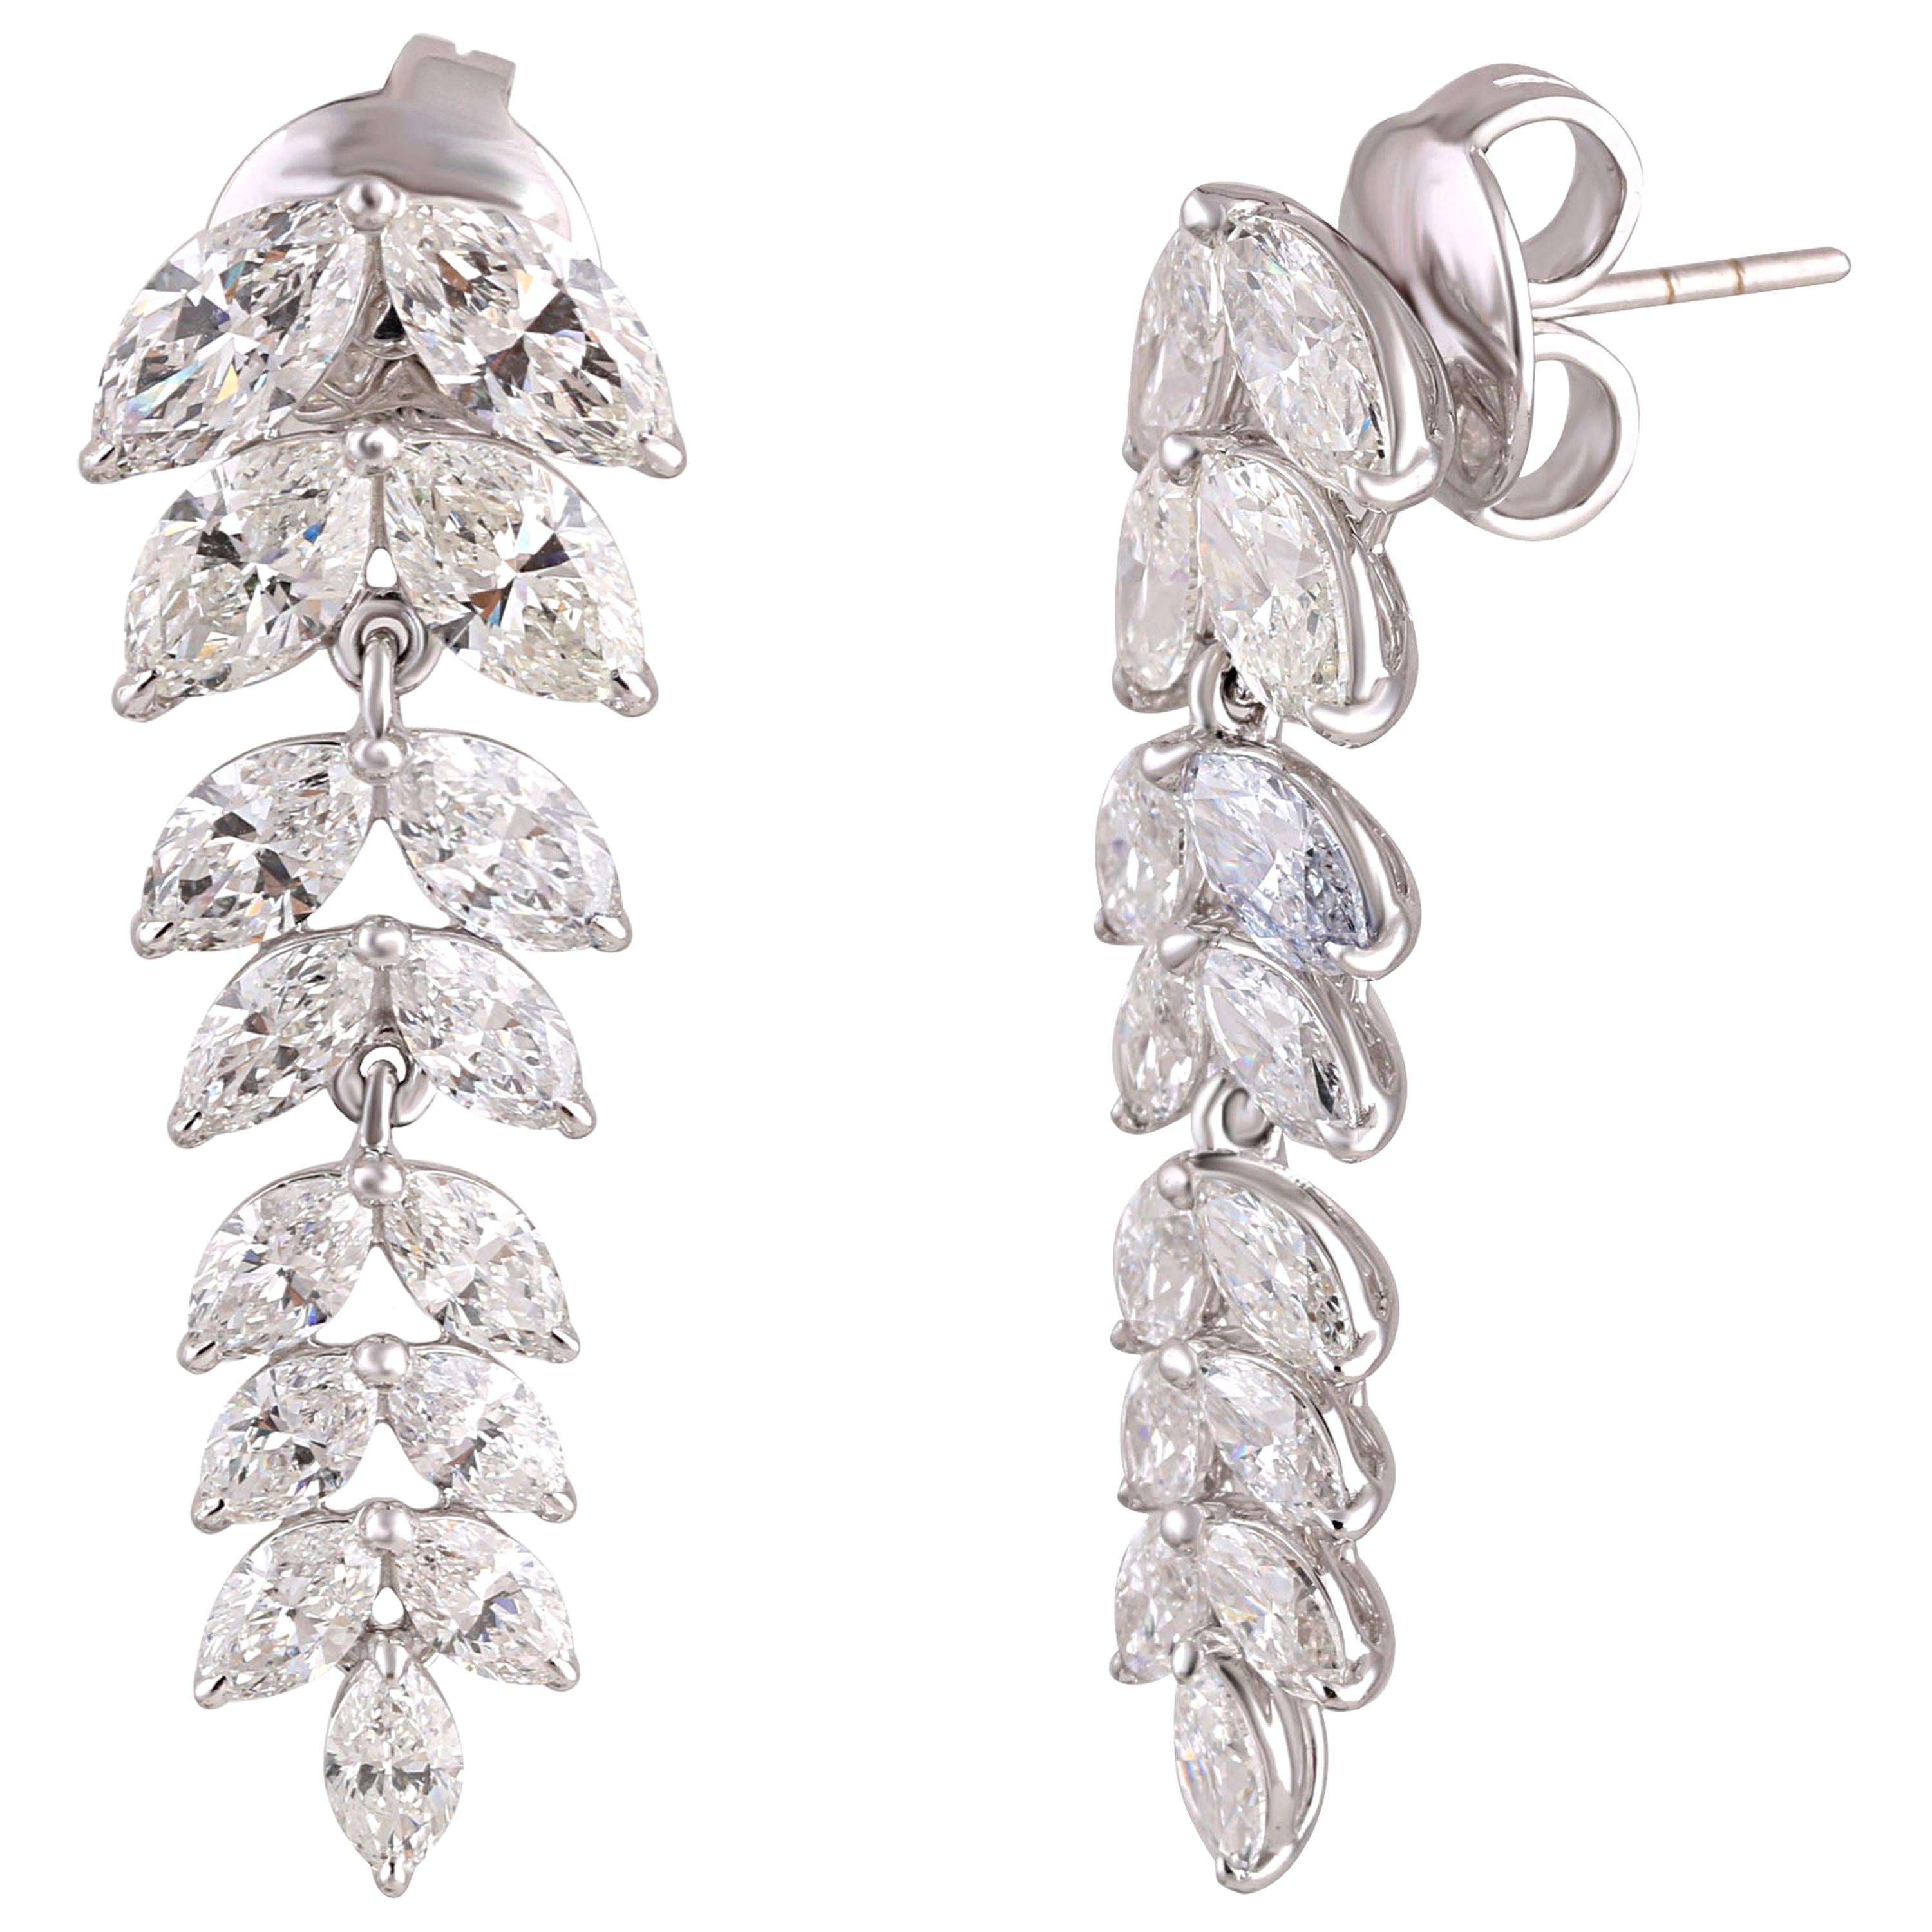 Studio Rêves Diamond Marquise Studded Earrings in 18 Karat White Gold For Sale